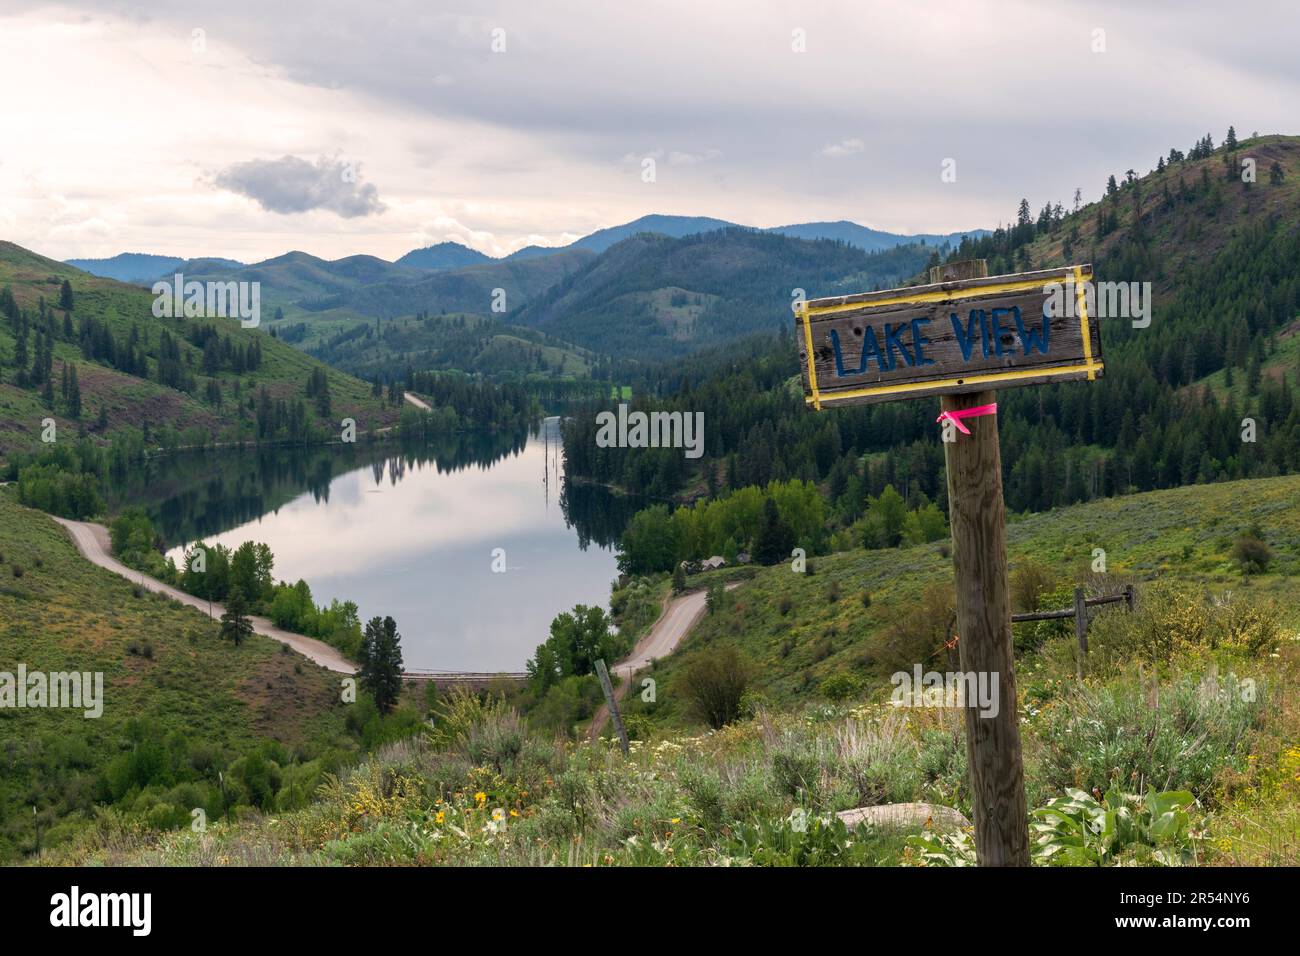 Un cartello con la scritta "Lake View" si affaccia sul lago Patterson e sulle colline circostanti della catena montuosa North Cascade vicino a Winthrop, Washington. Foto Stock